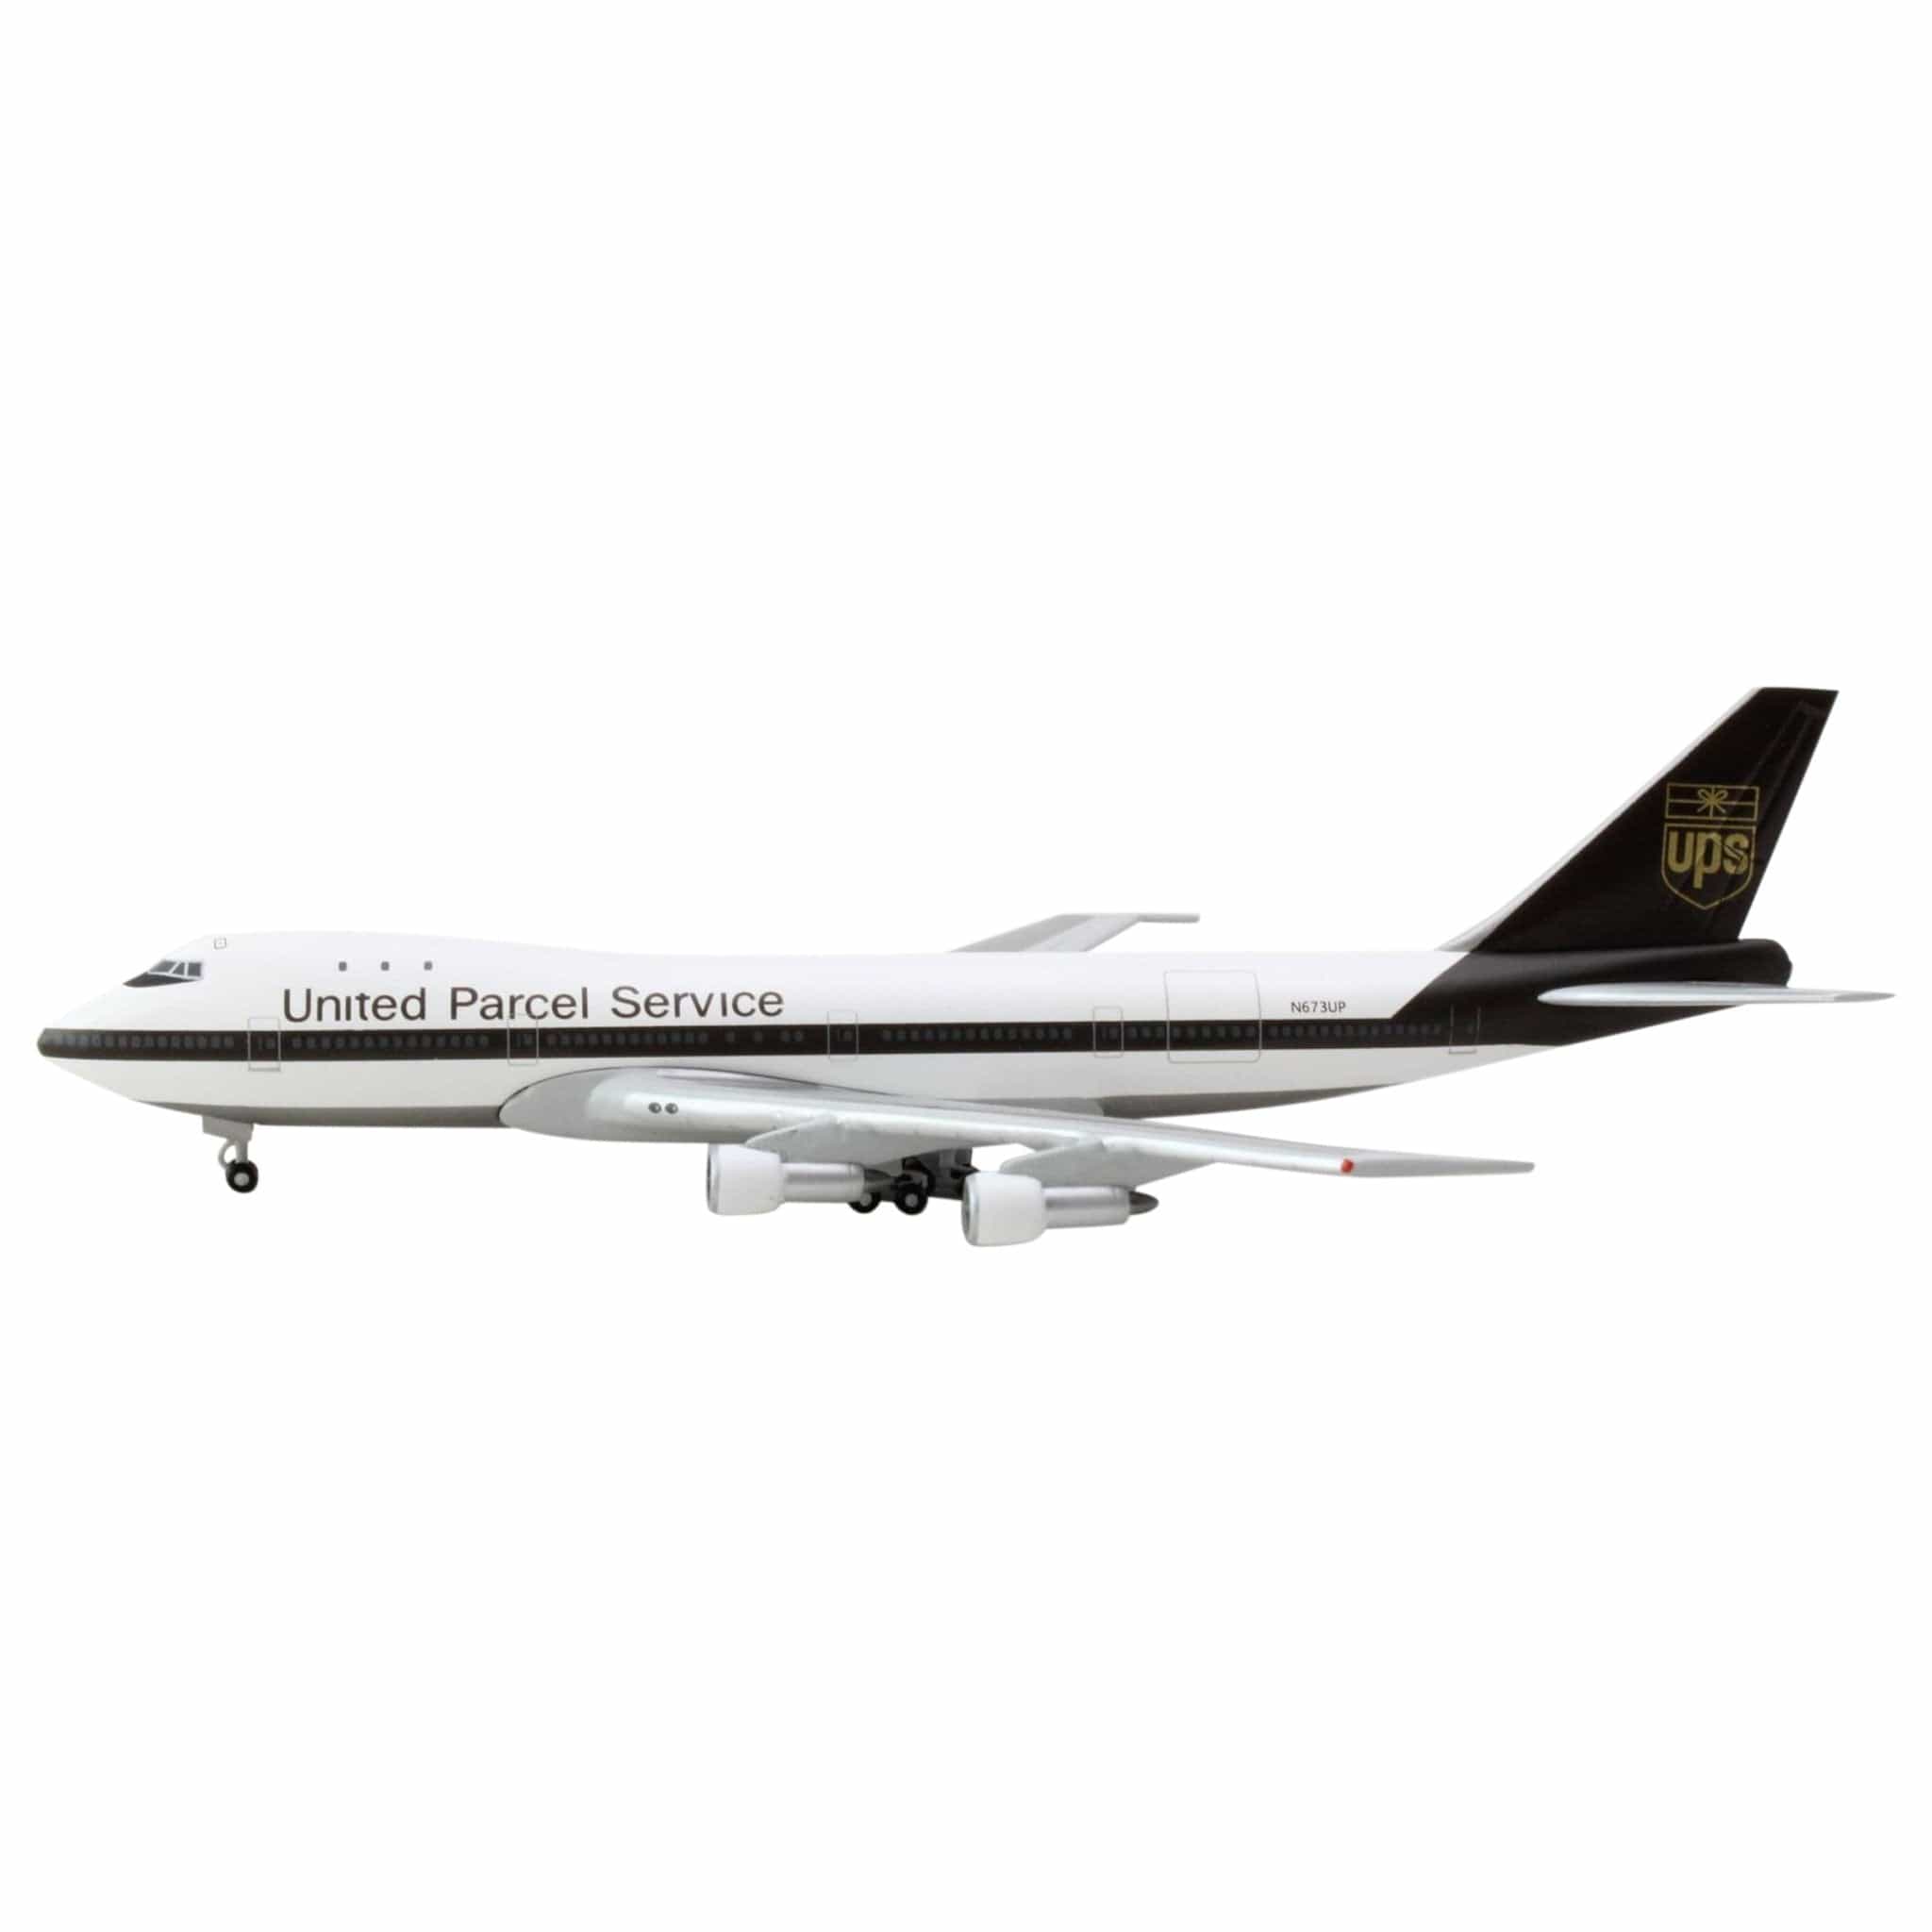 Herpa UPS 747-100F 1/500 Die-Cast Metal Model Aircraft